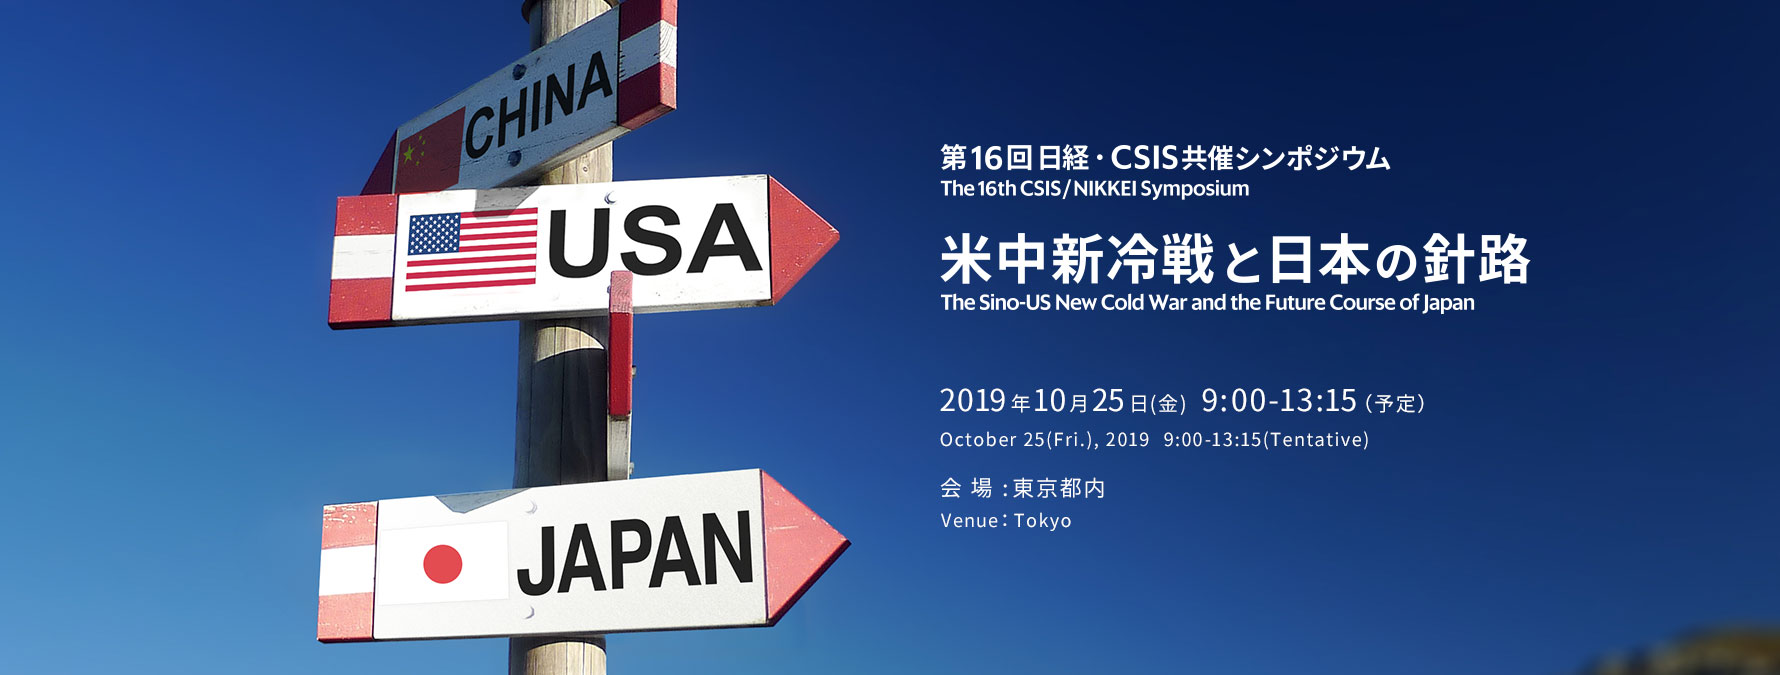 第16回日経・CSIS共催シンポジウム「米中新冷戦と日本の針路」｜The 16th CSIS/NIKKEI Symposium'The Sino-US New Cold War and Japan'